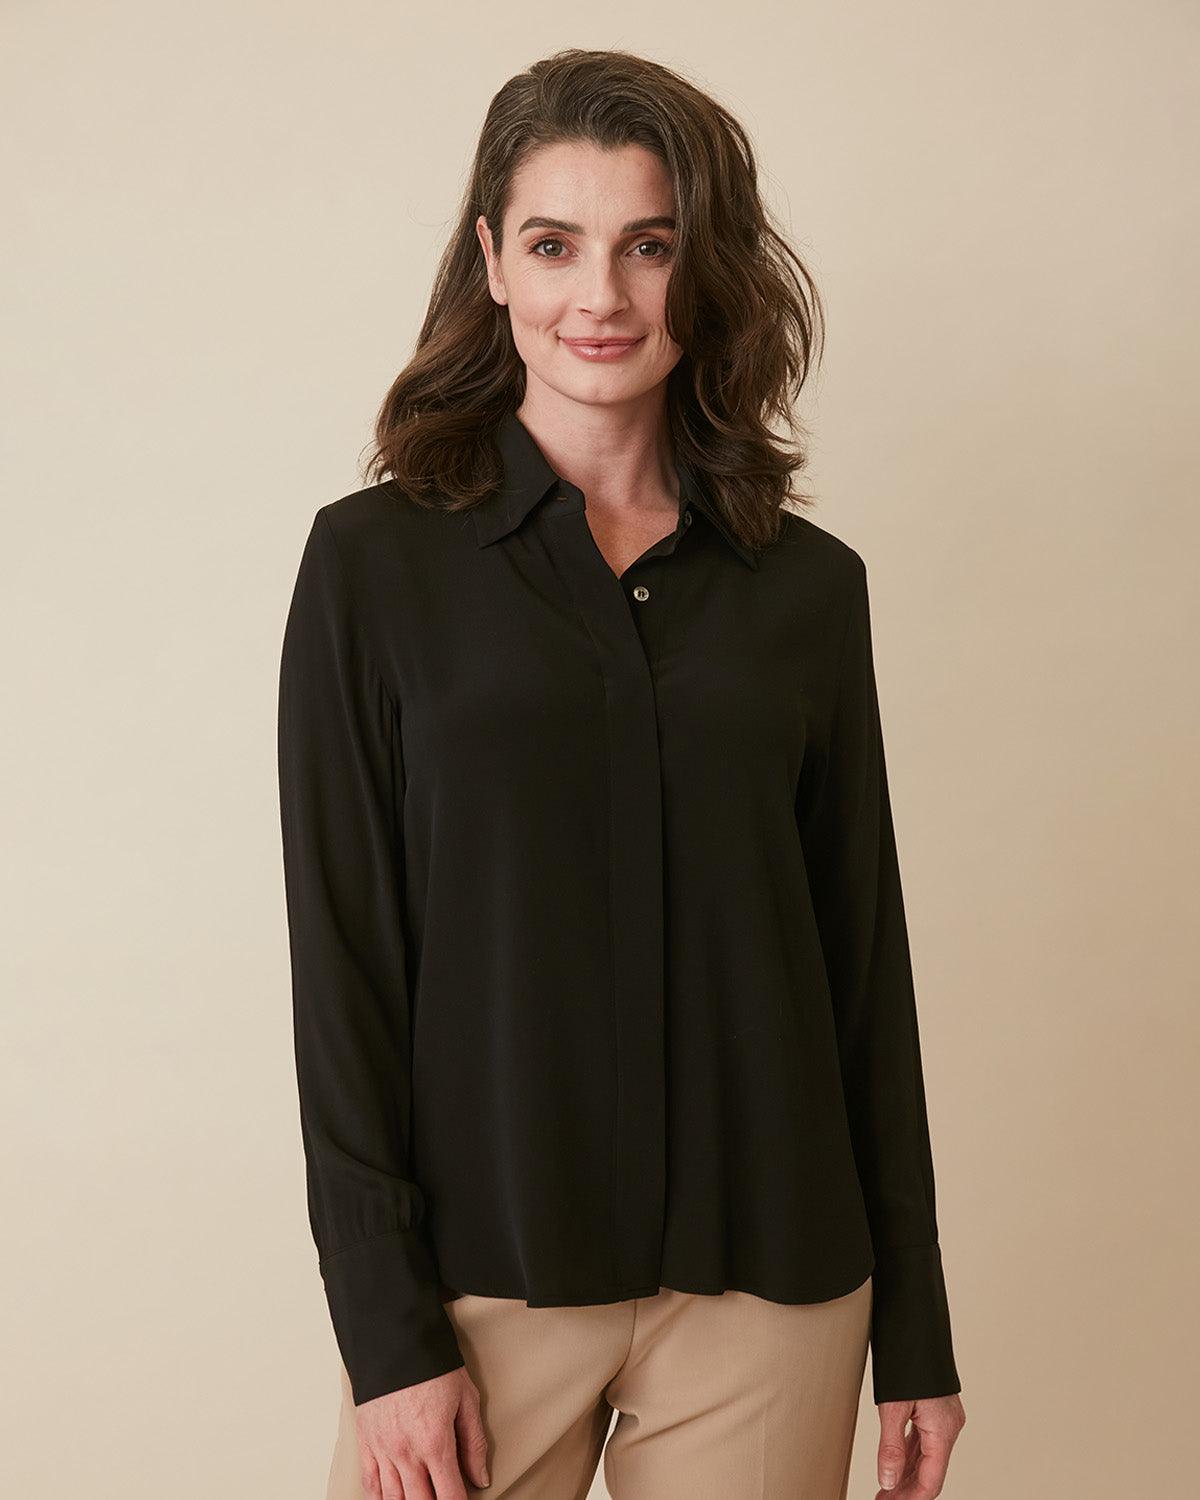 Women's Long Sleeve Office Work T-shirt Bodysuit Button Down Blouse Leotard